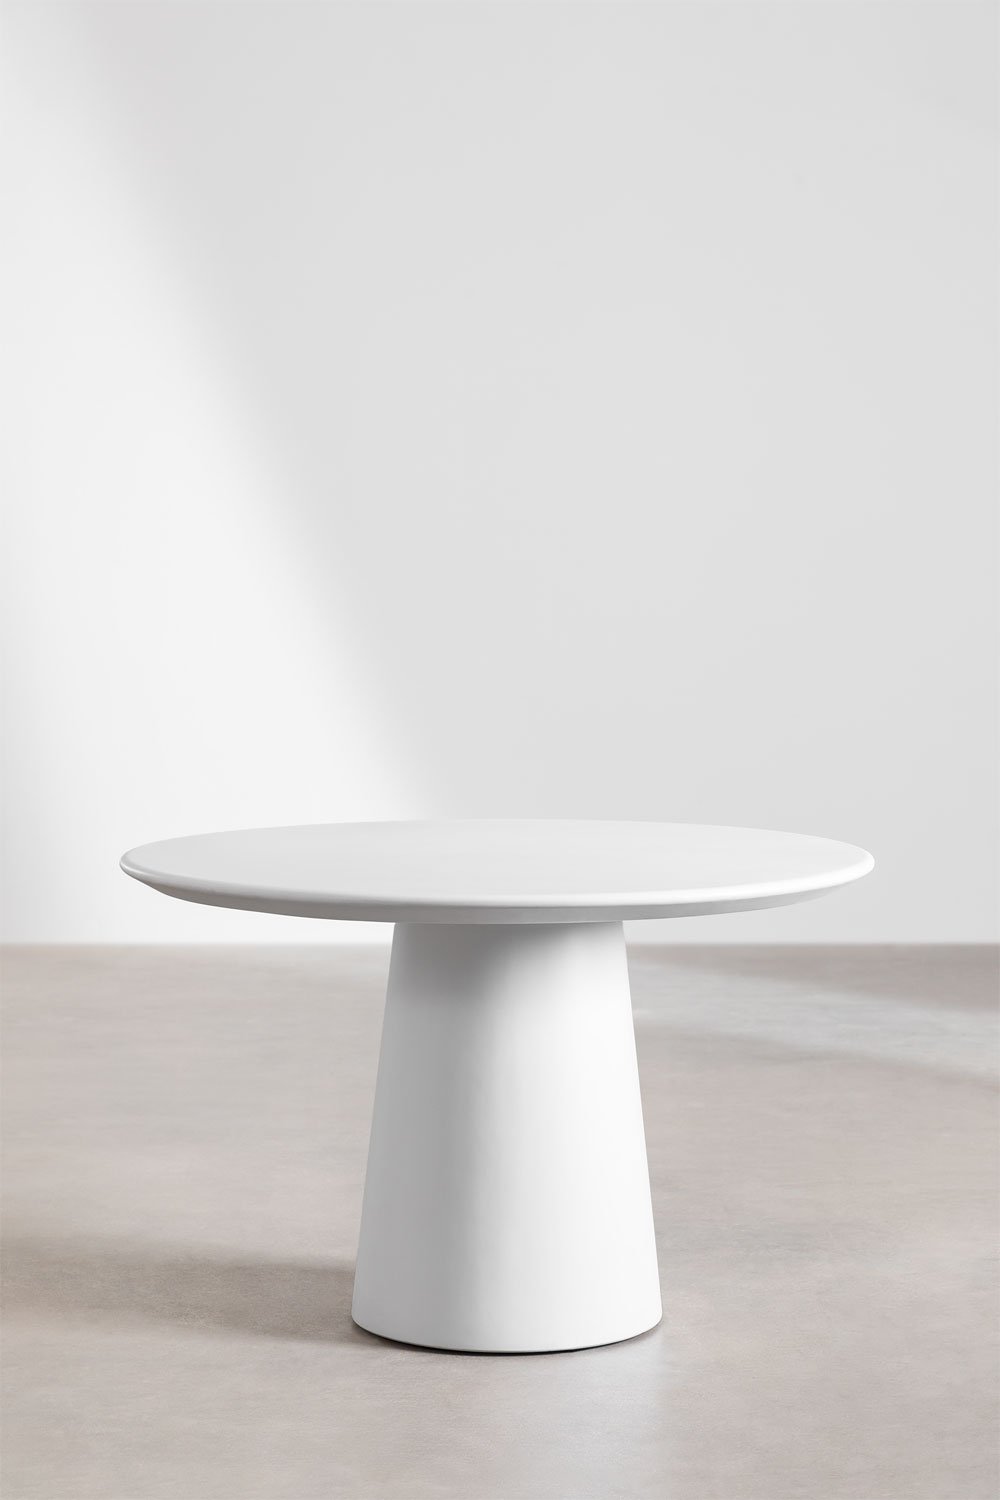 Tavolo da pranzo rotondo in cemento (Ø120 cm) Zillad, immagine della galleria 2